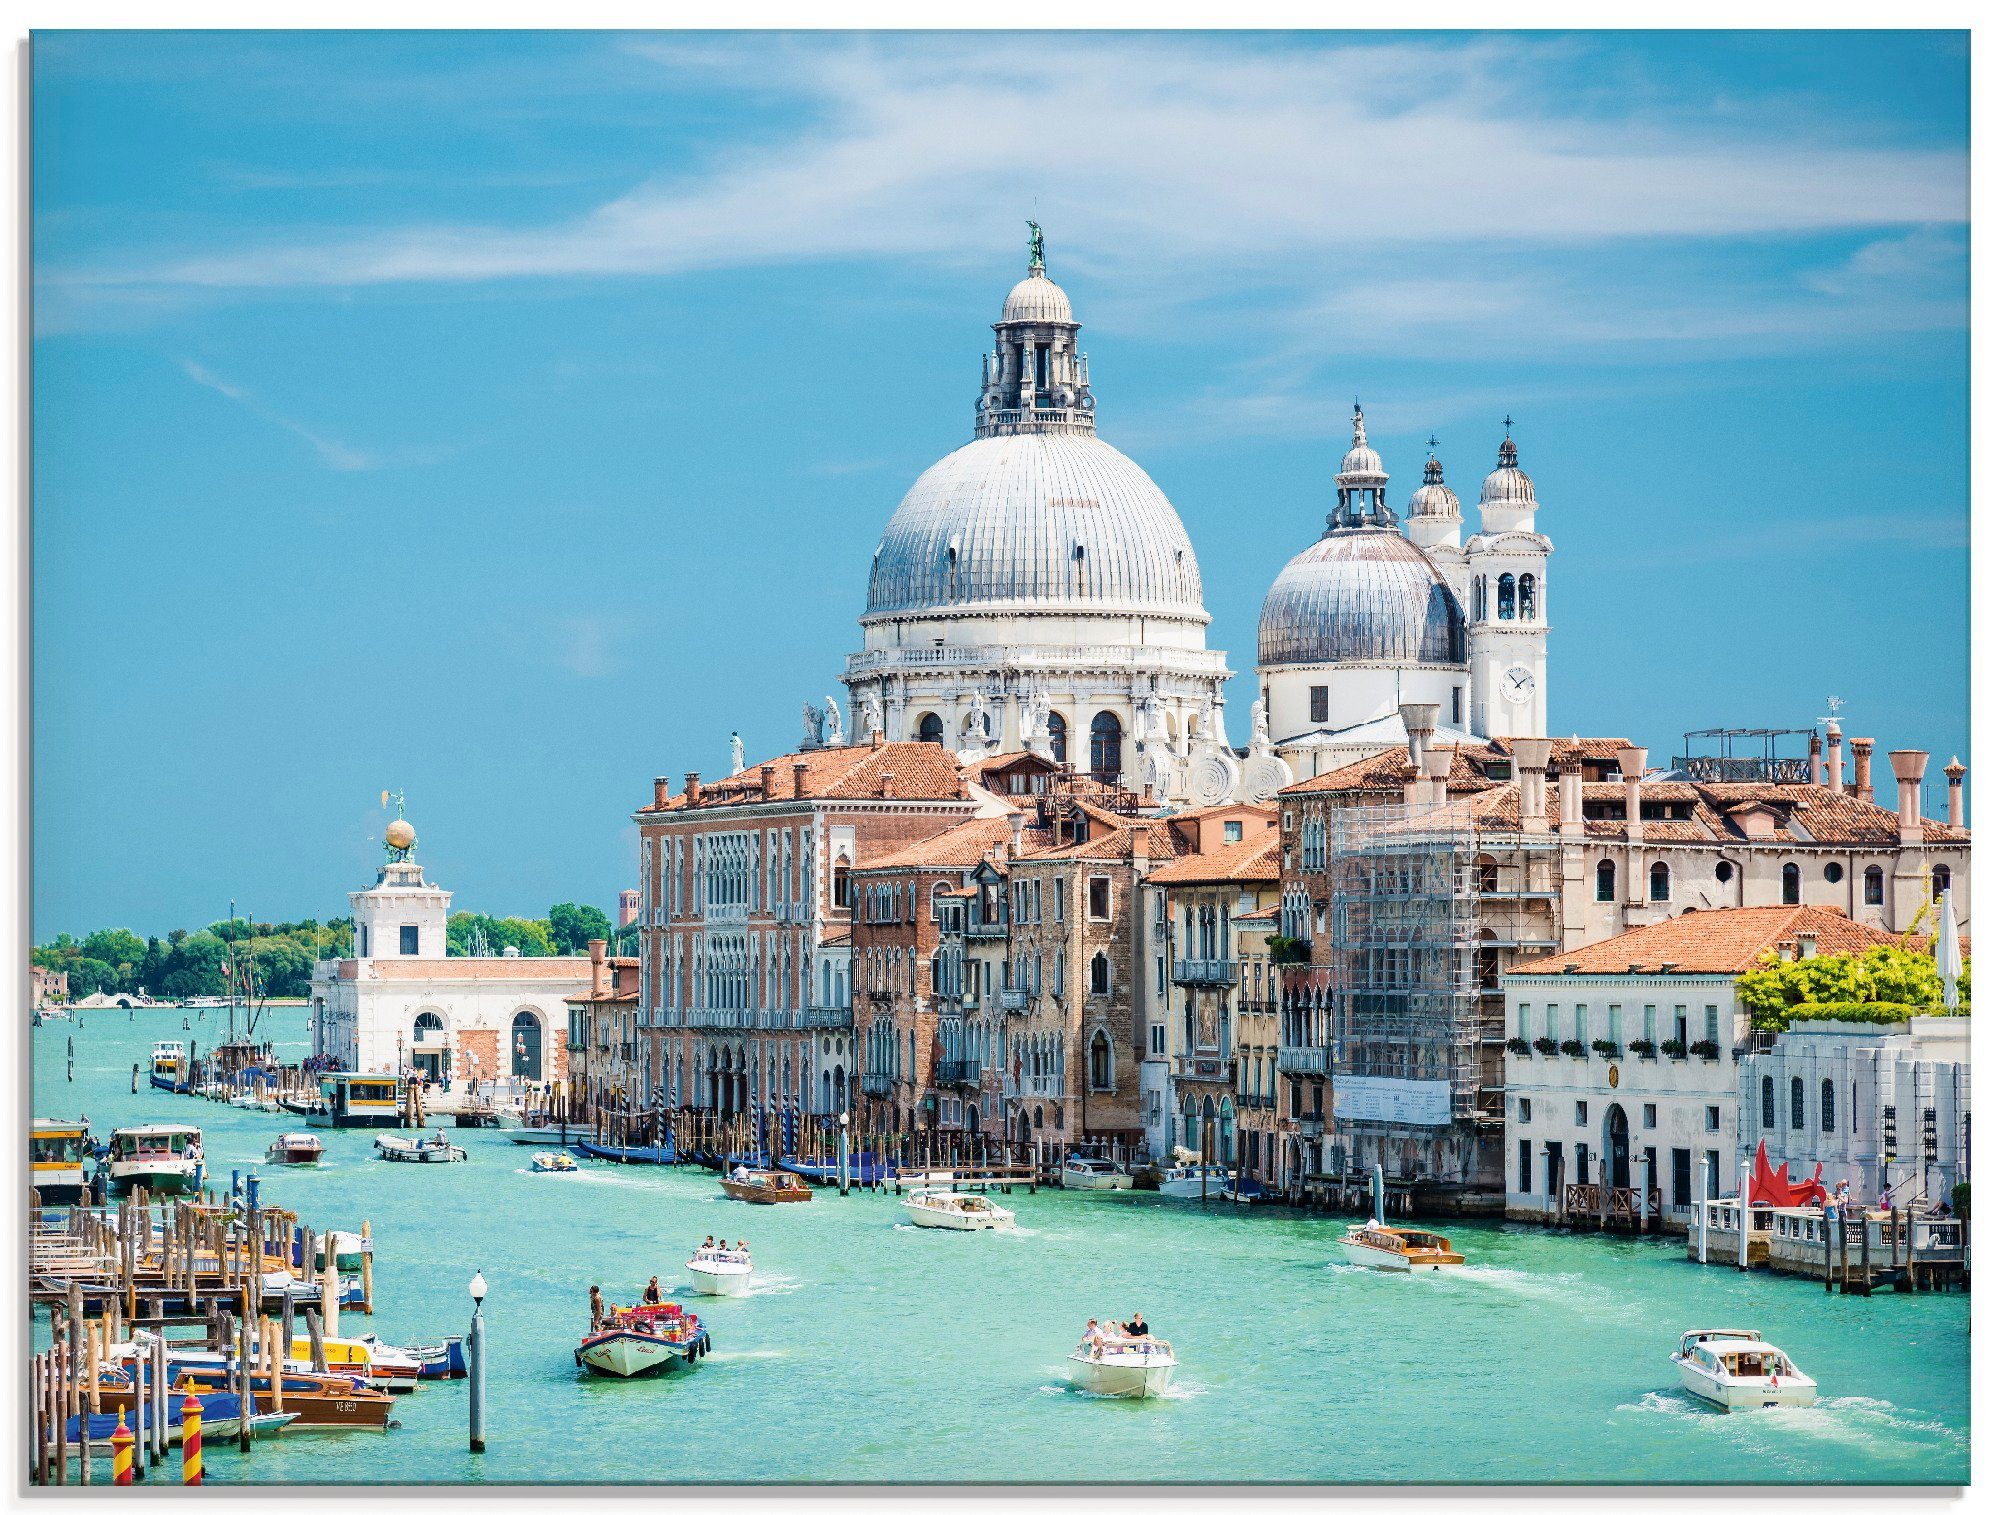 Artland Glasbild Venedig, Italien (1 St), in verschiedenen Größen